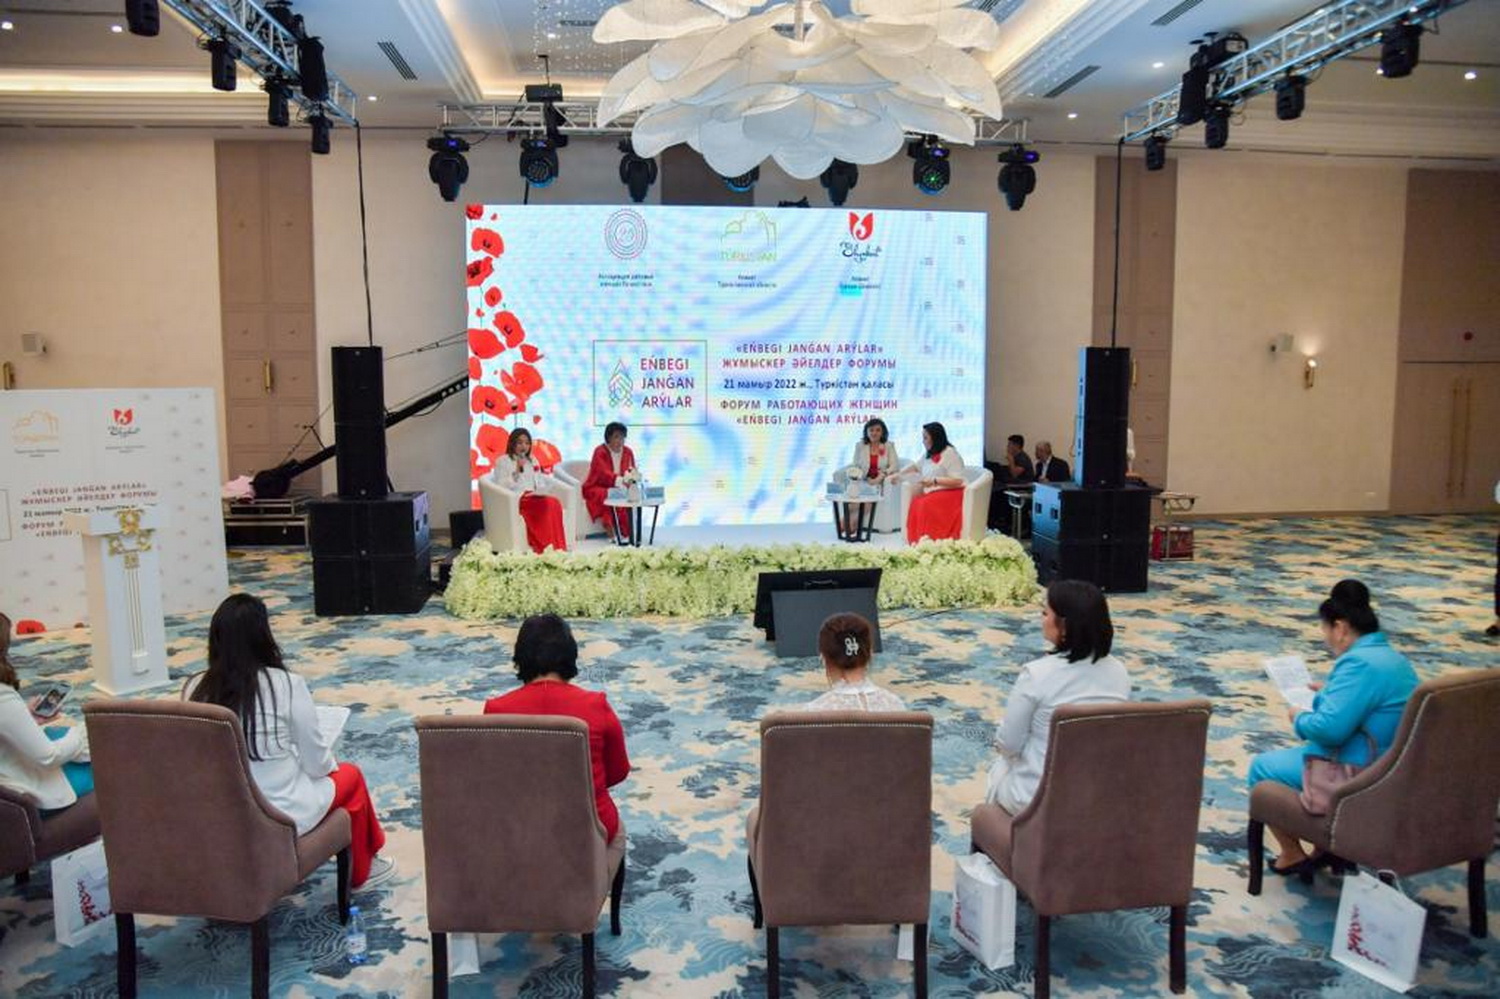 Форум работающих женщин «Еңбегі жанған арулар» в г. Туркестан